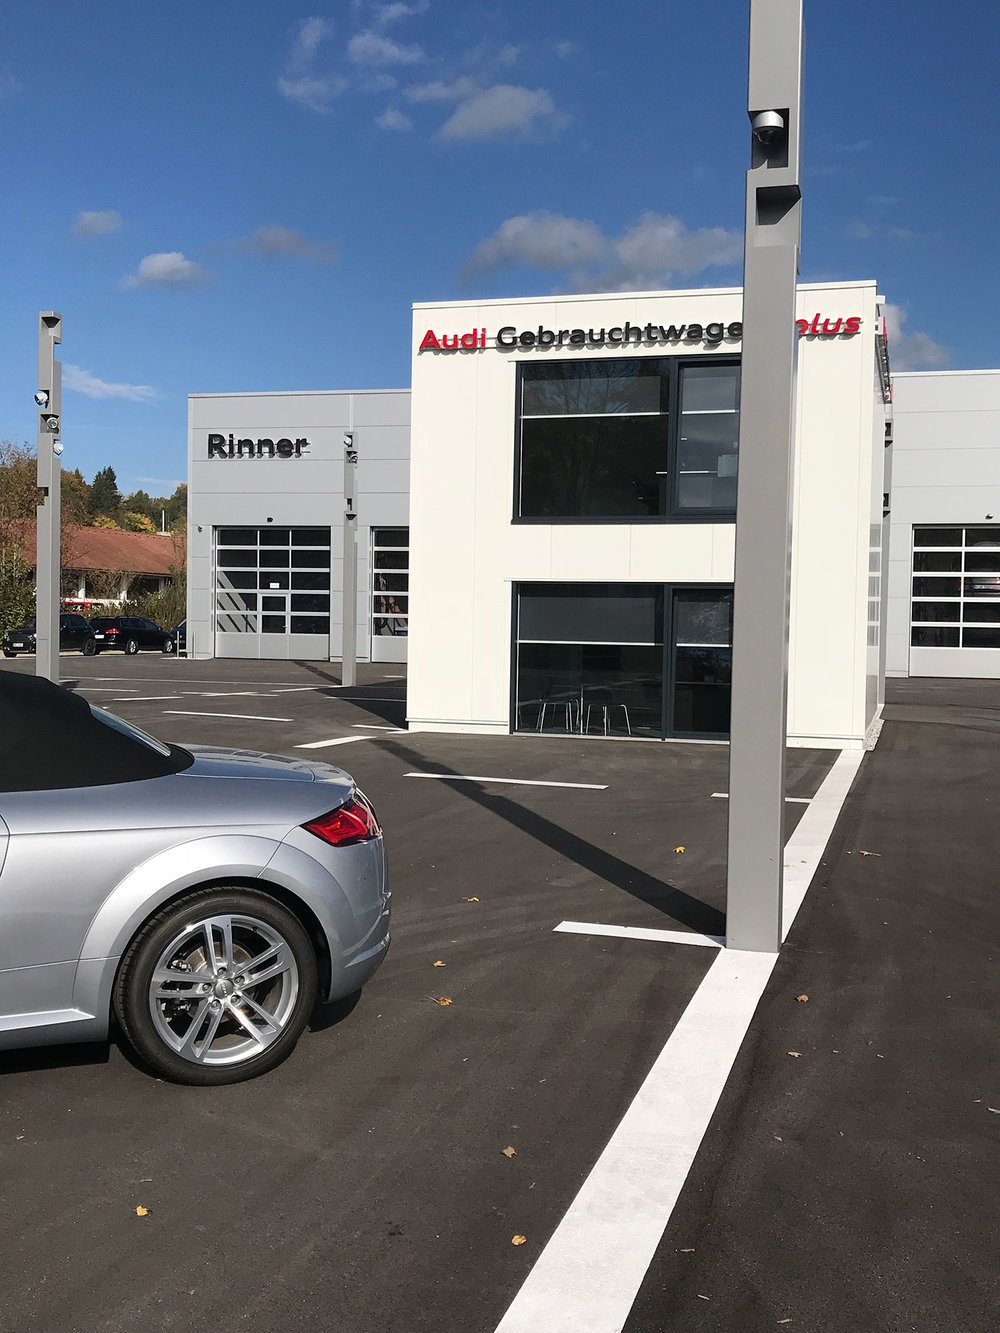 Audi-Gebrauchtwagenzentrum-Bad-Toelz_Krinner-Architektur_5.jpg